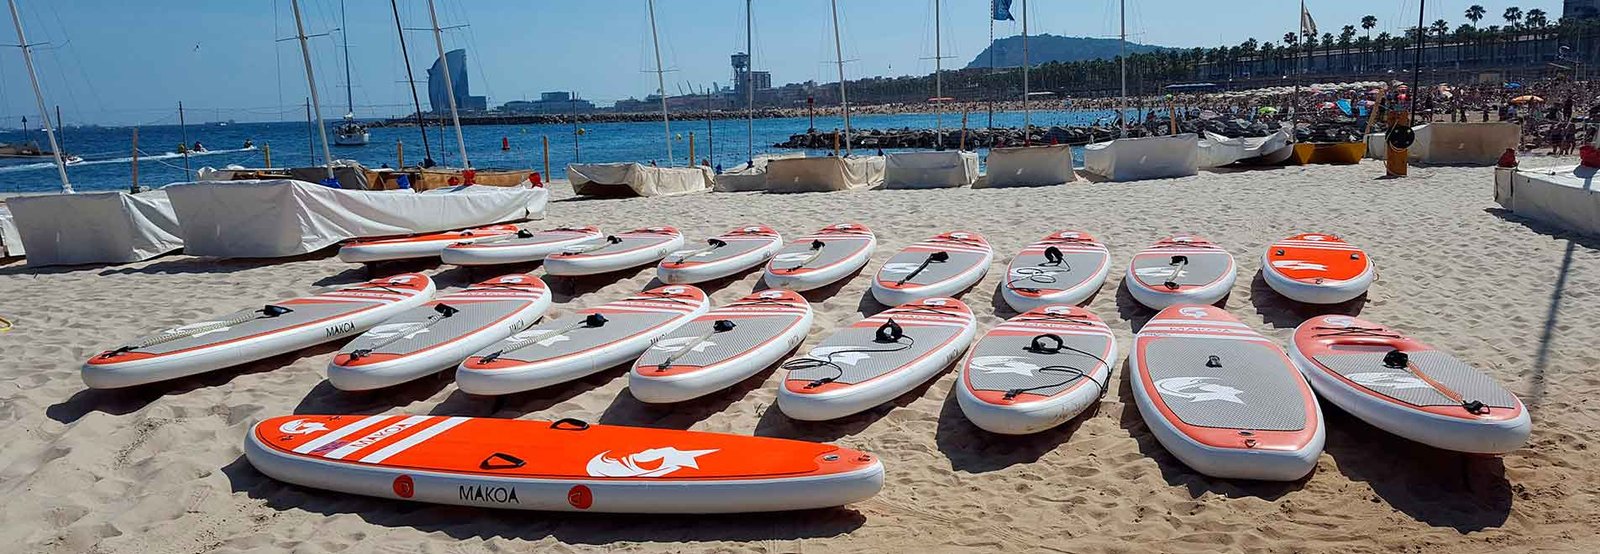 Clases de Paddle Surf Barcelona